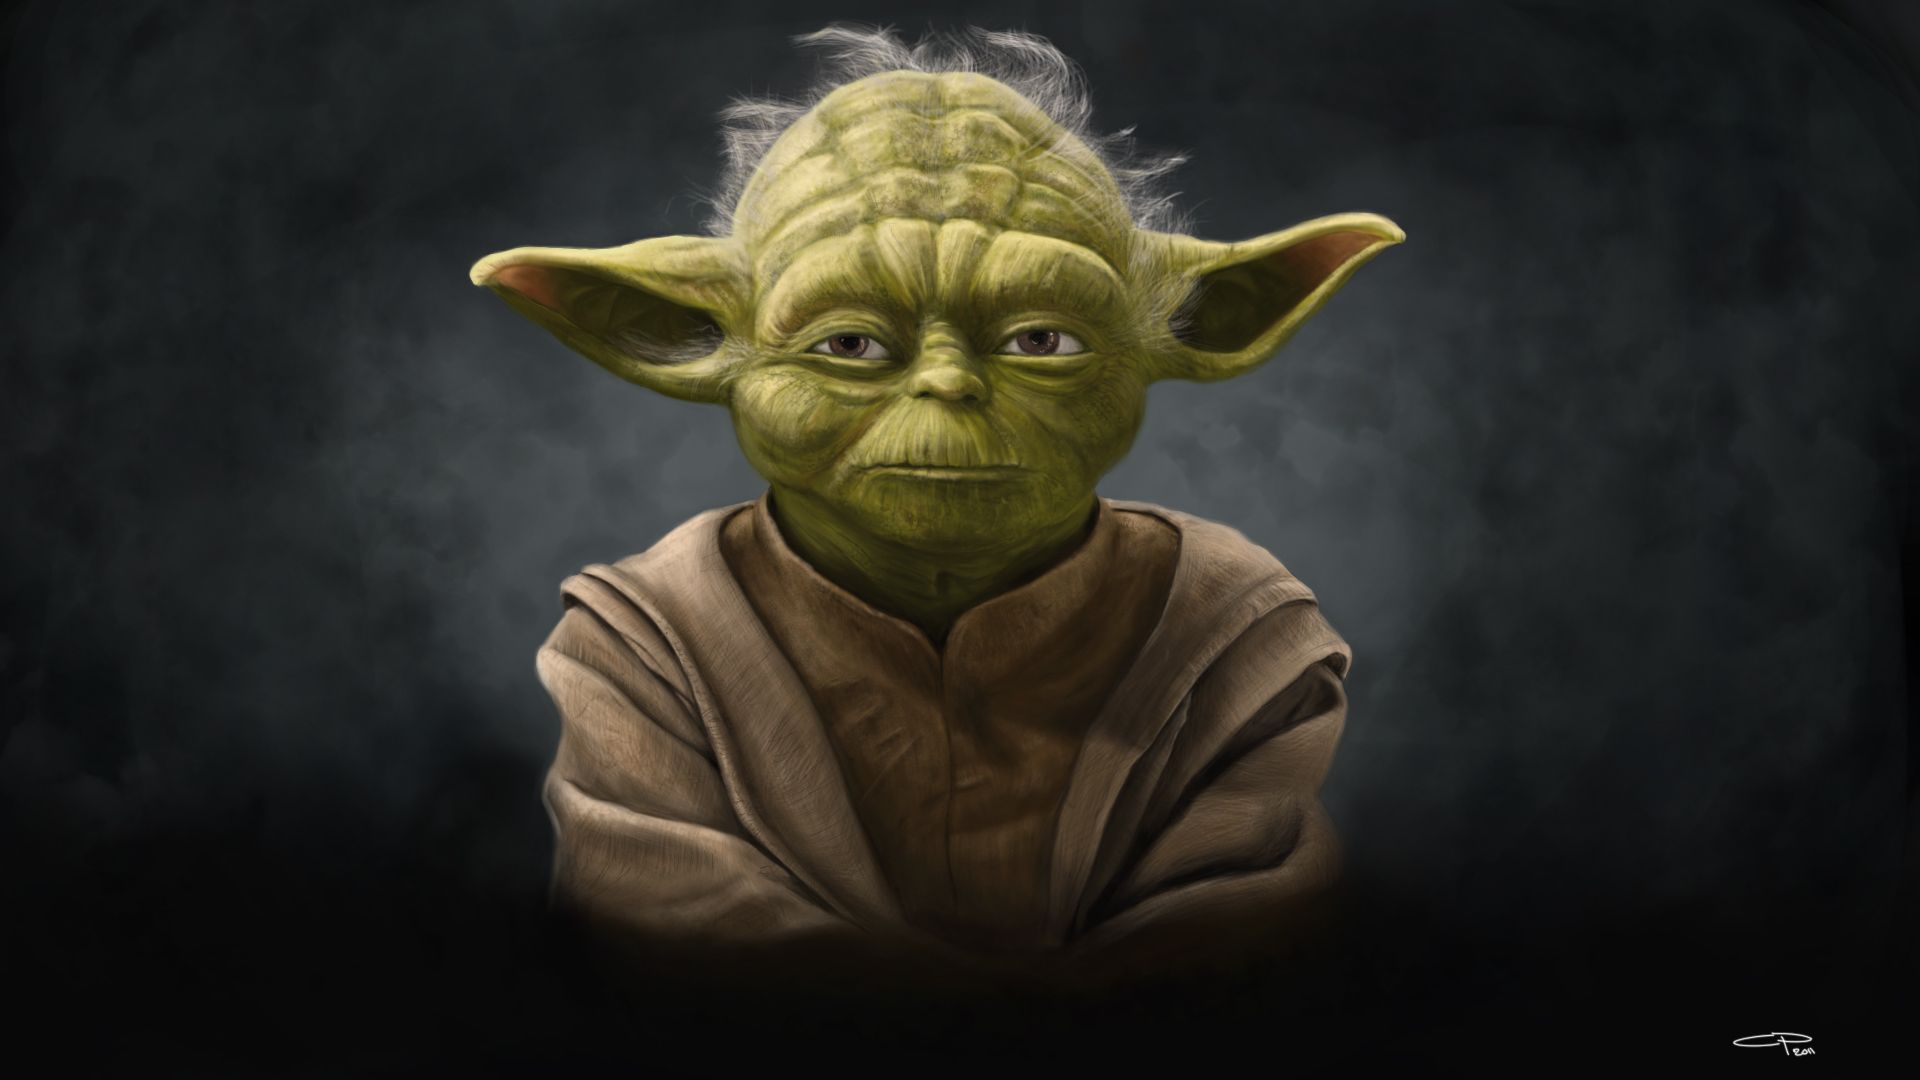 Star Wars Yoda Wallpaper